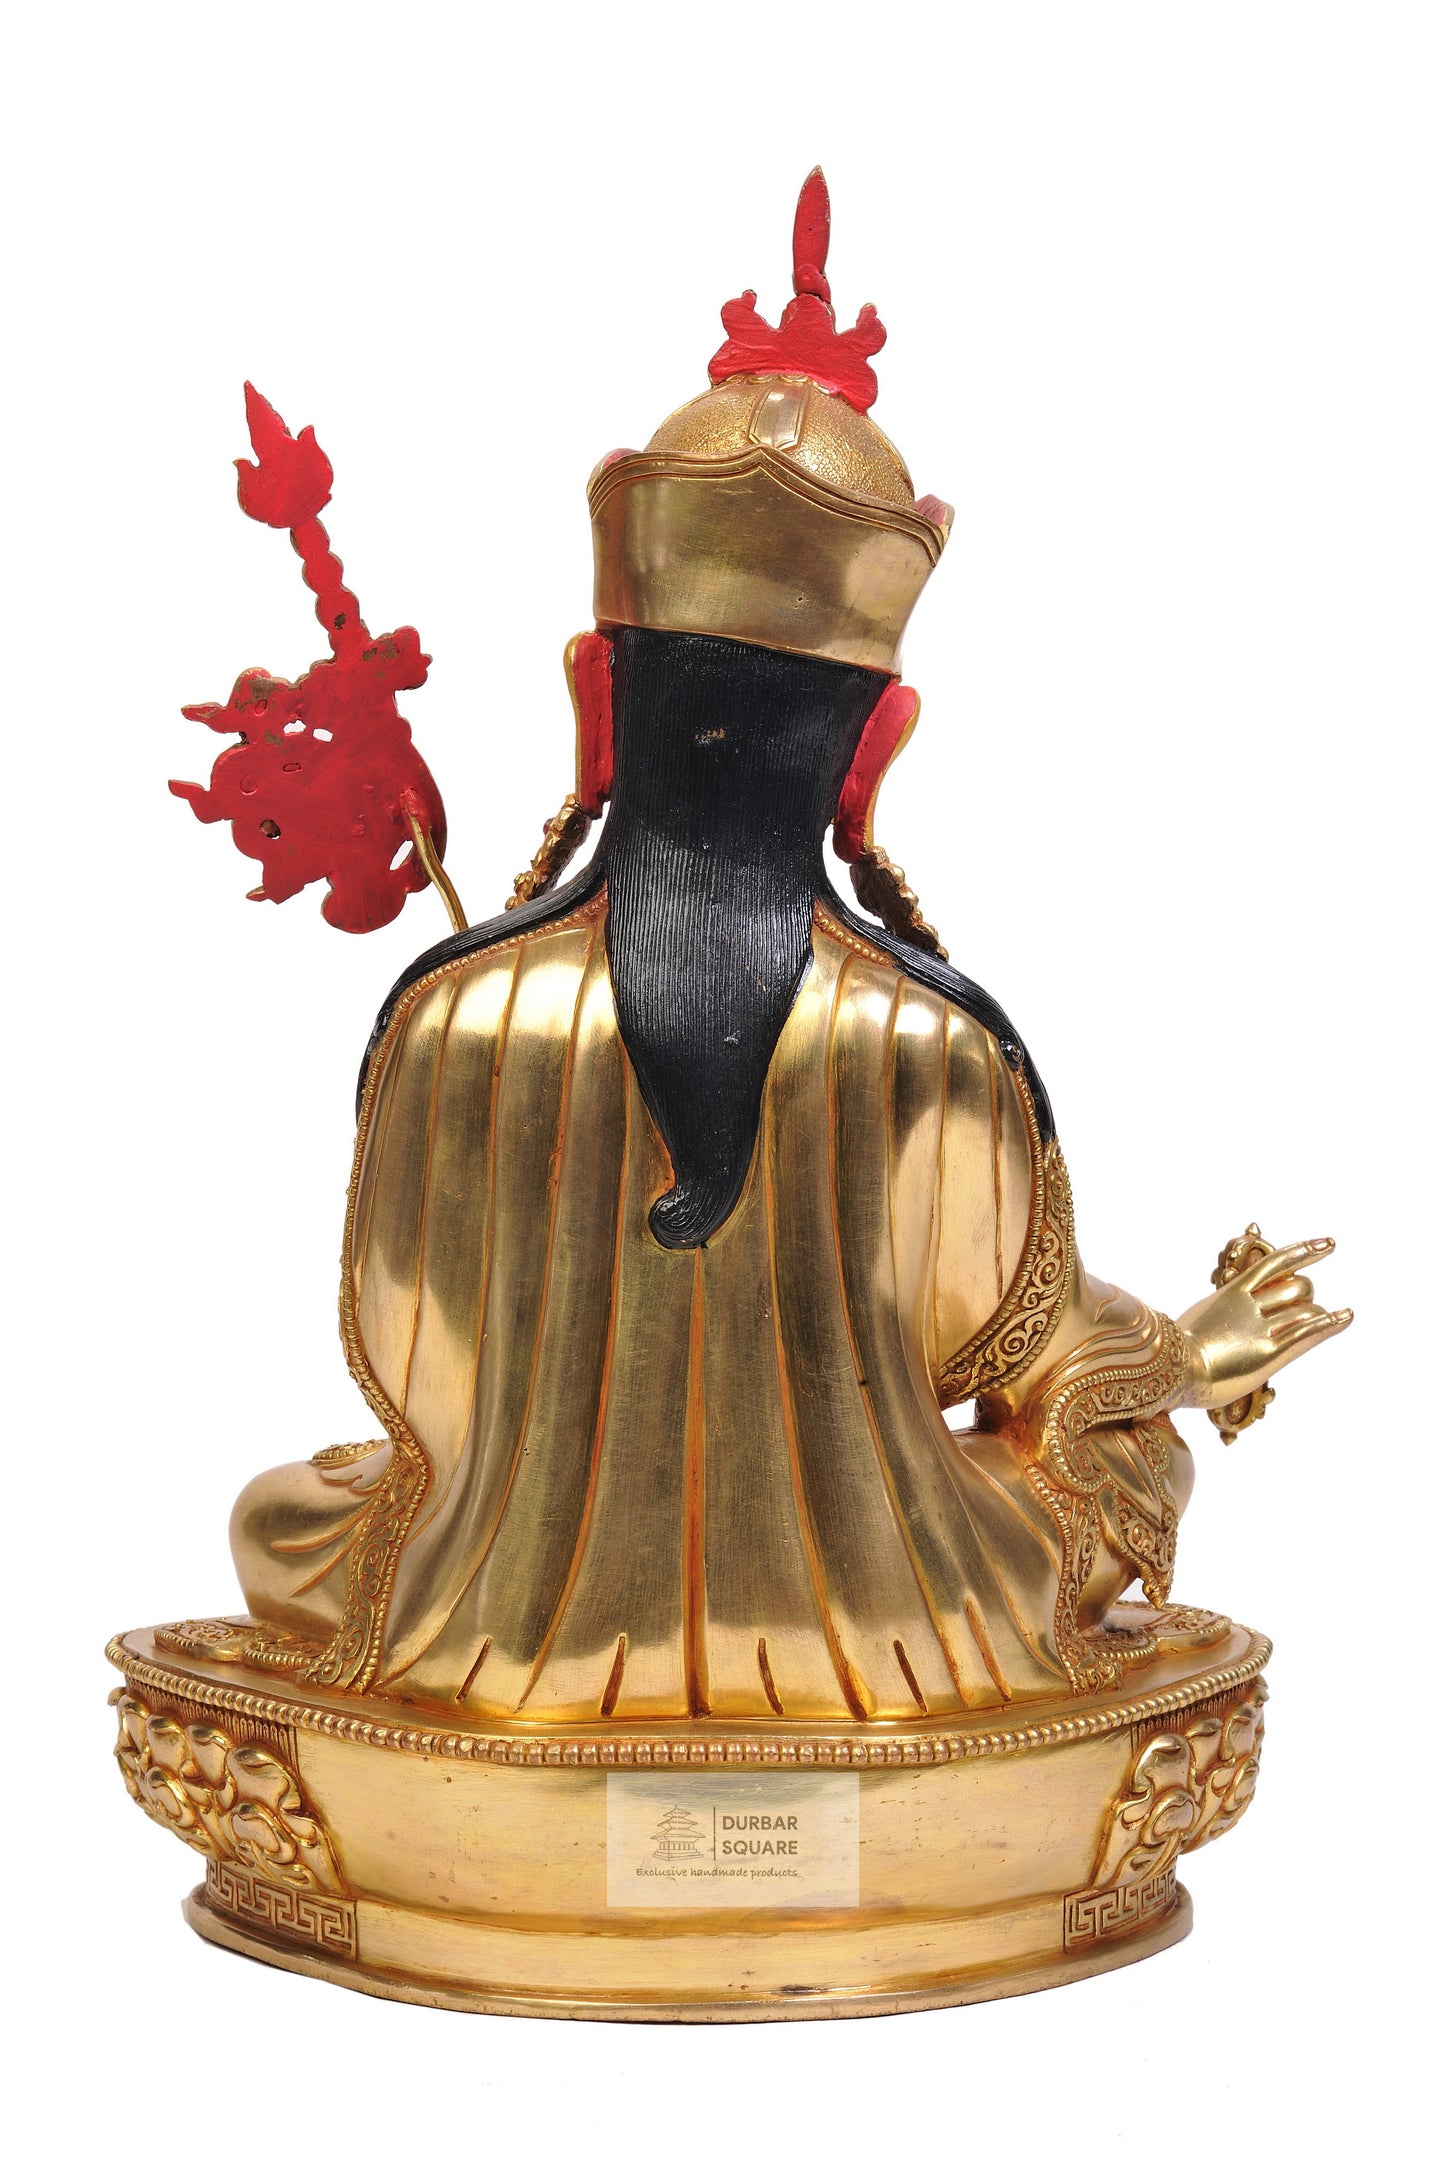 Guru Padmasambhawa Statue